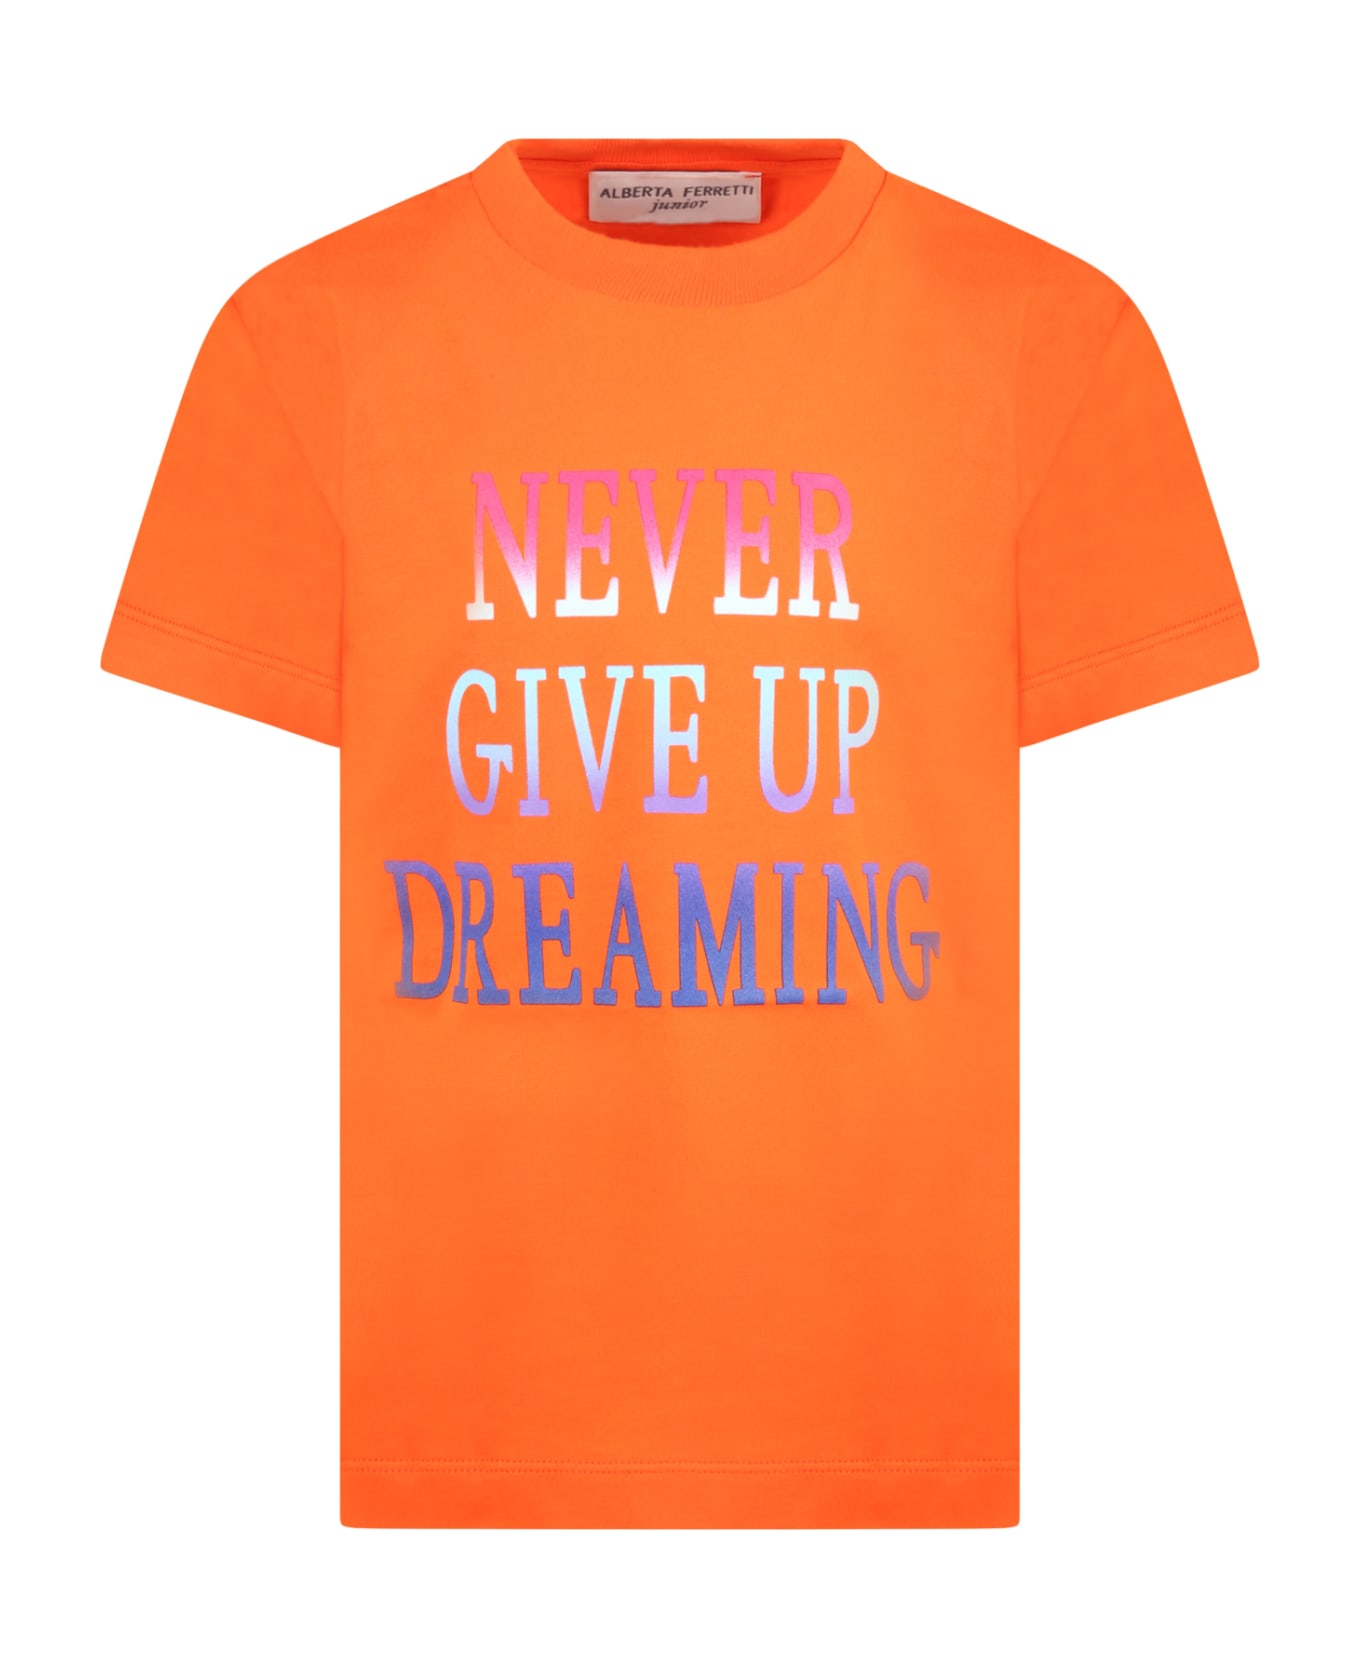 Alberta Ferretti Orange T-shirt For Girl With Multicolor Writing - Orange